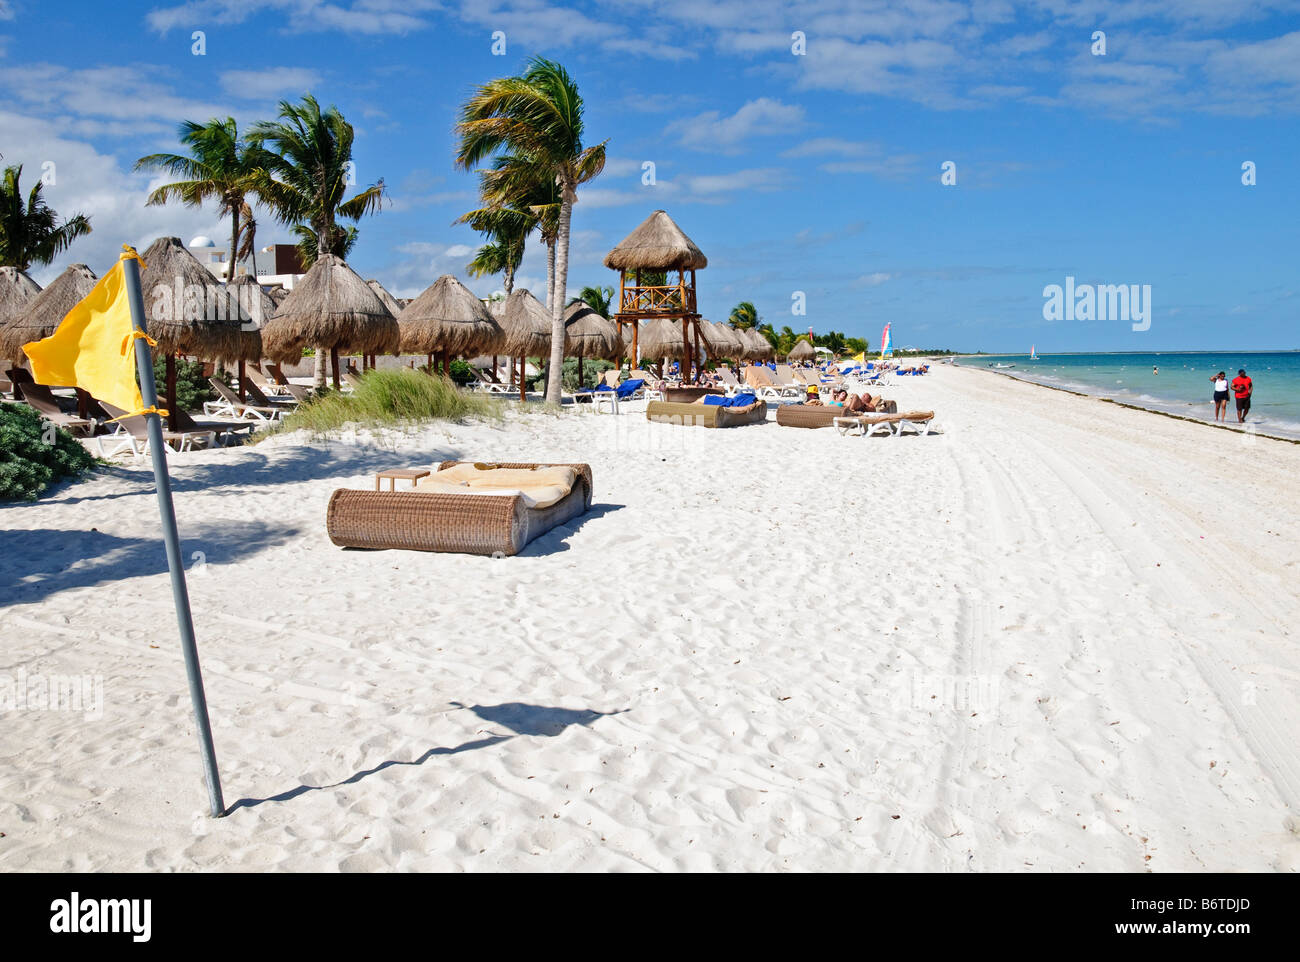 Beachfront at Excellence Playa Mujeres Resort at Playa Mujeres, north of Cancun, Quintana Roo, Mexico Stock Photo